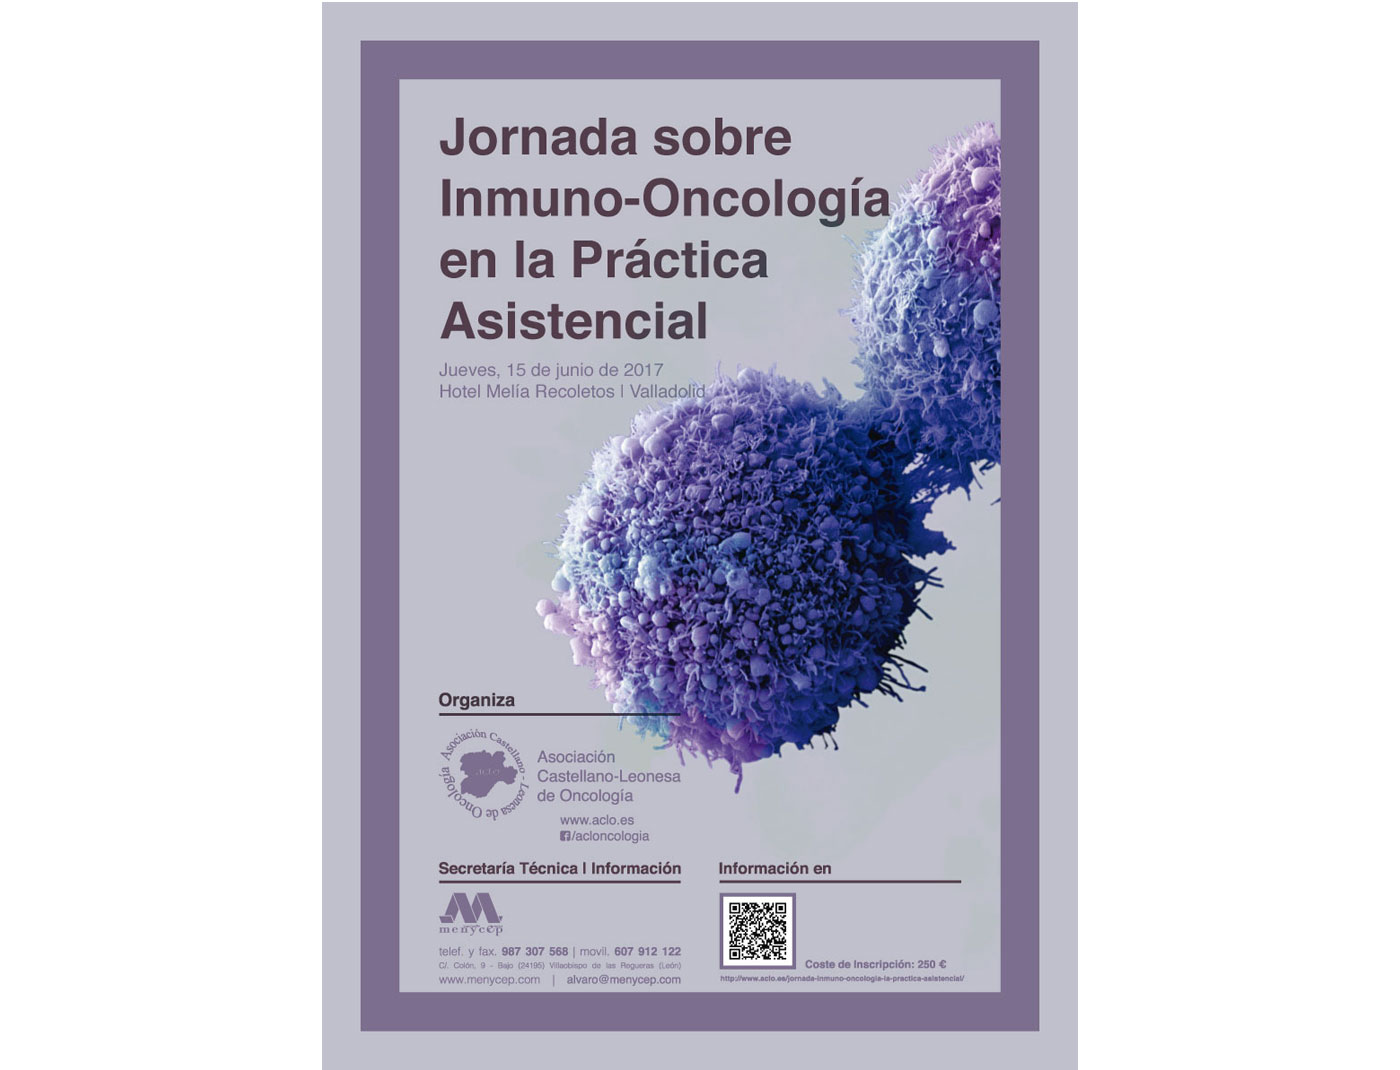 Jornada sobre Inmuno-Oncología en la Práctica Asistencial